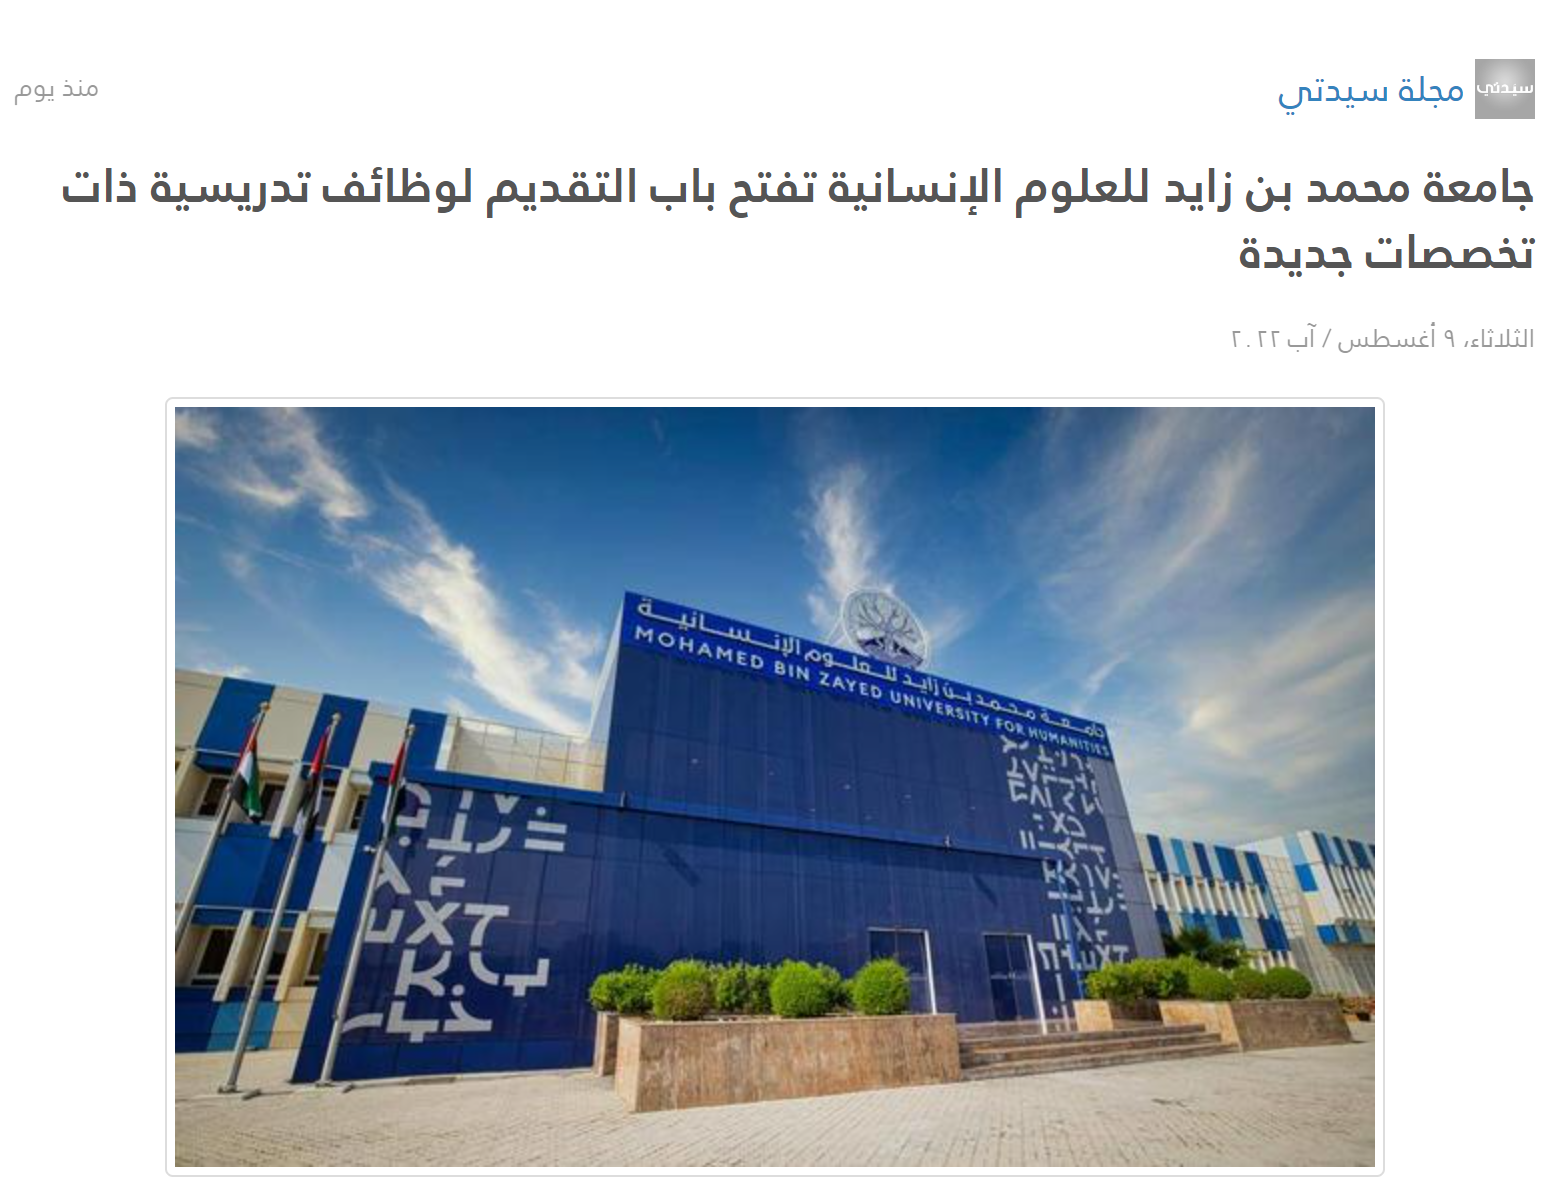 جامعة محمد بن زايد للعلوم الإنسانية تفتح باب التقديم لوظائف تدريسية ذات تخصصات جديدة